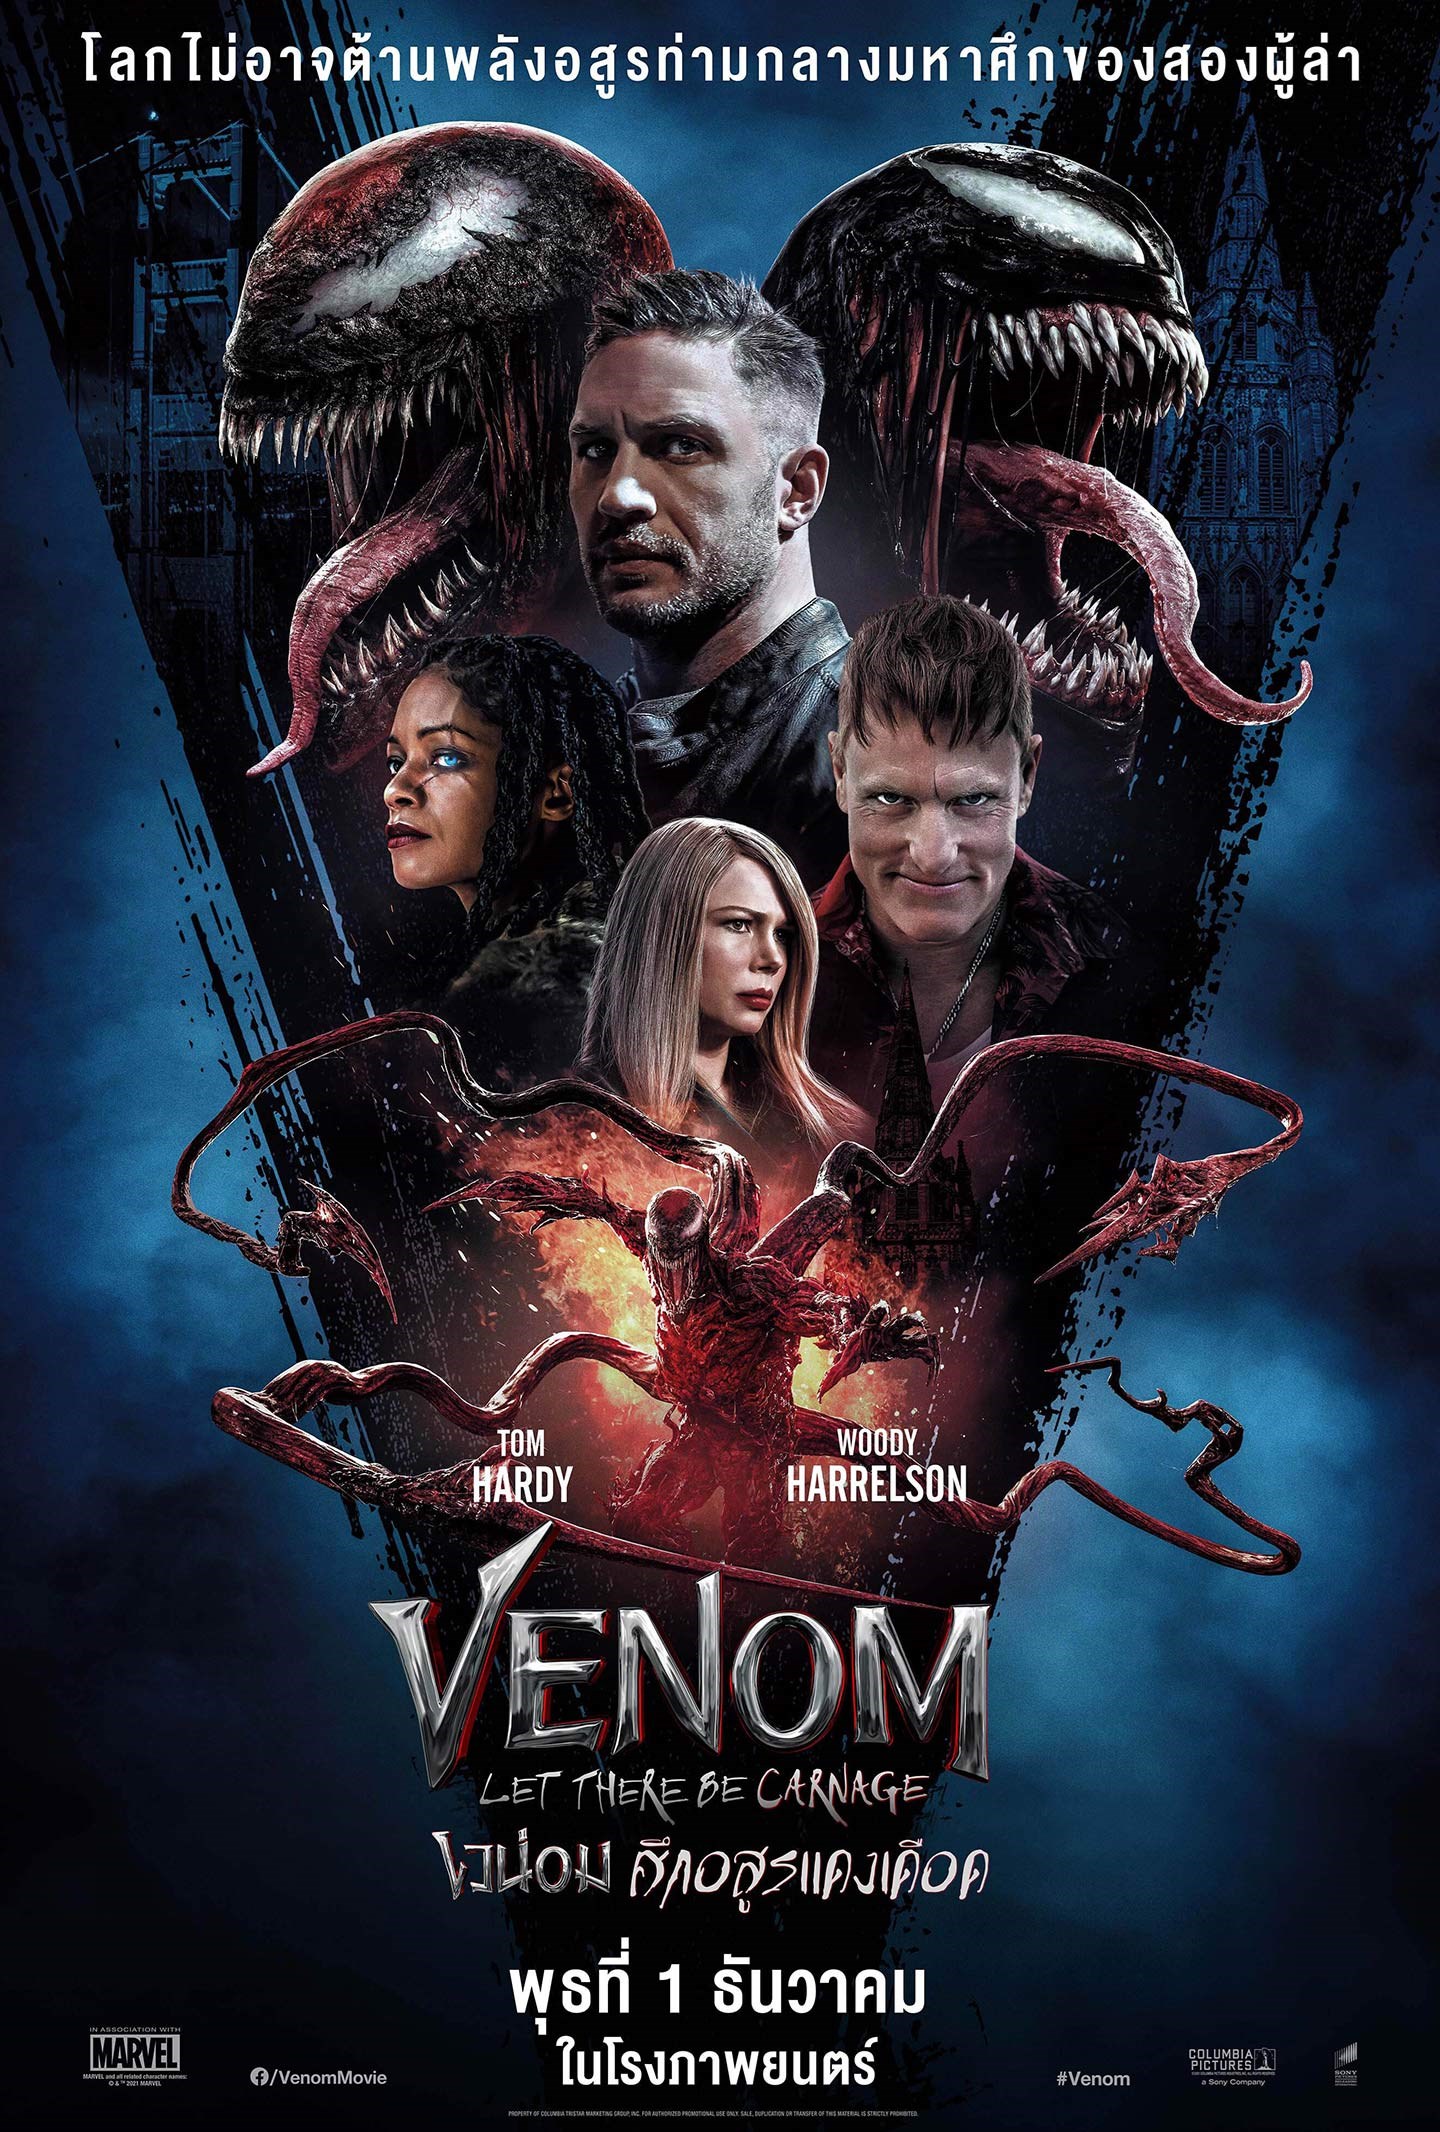 ดูหนังออนไลน์ Venom Let There Be Carnage เวน่อม 2 ศึกอสูรแดงเดือด 2021 พากย์ไทย